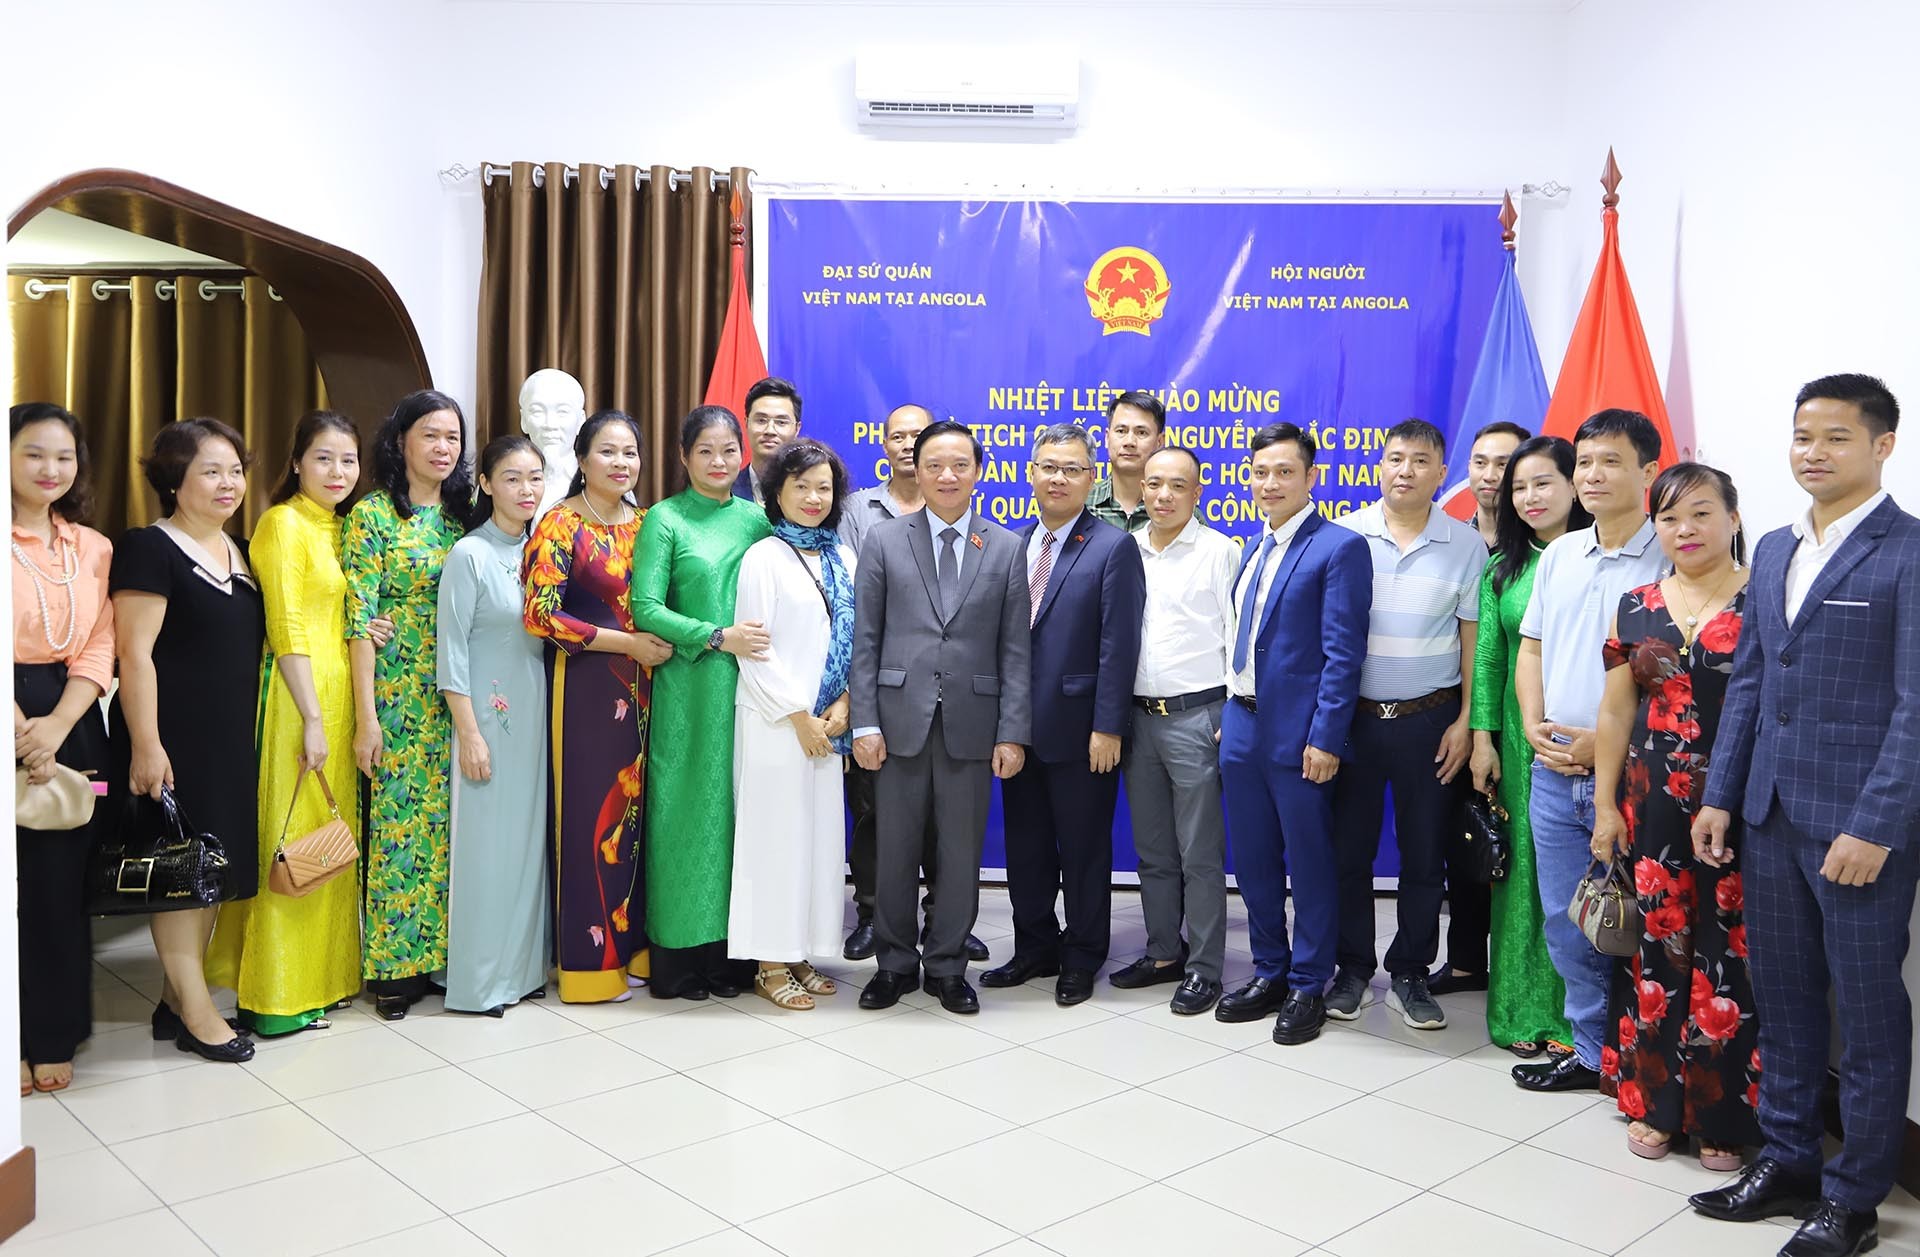 Phó Chủ tịch Quốc hội Nguyễn Khắc Định chụp ảnh lưu niệm cùng cán bộ, nhân viên Đại sứ quán và cộng đồng người Việt Nam tại Angola. (Nguồn: TTXVN)